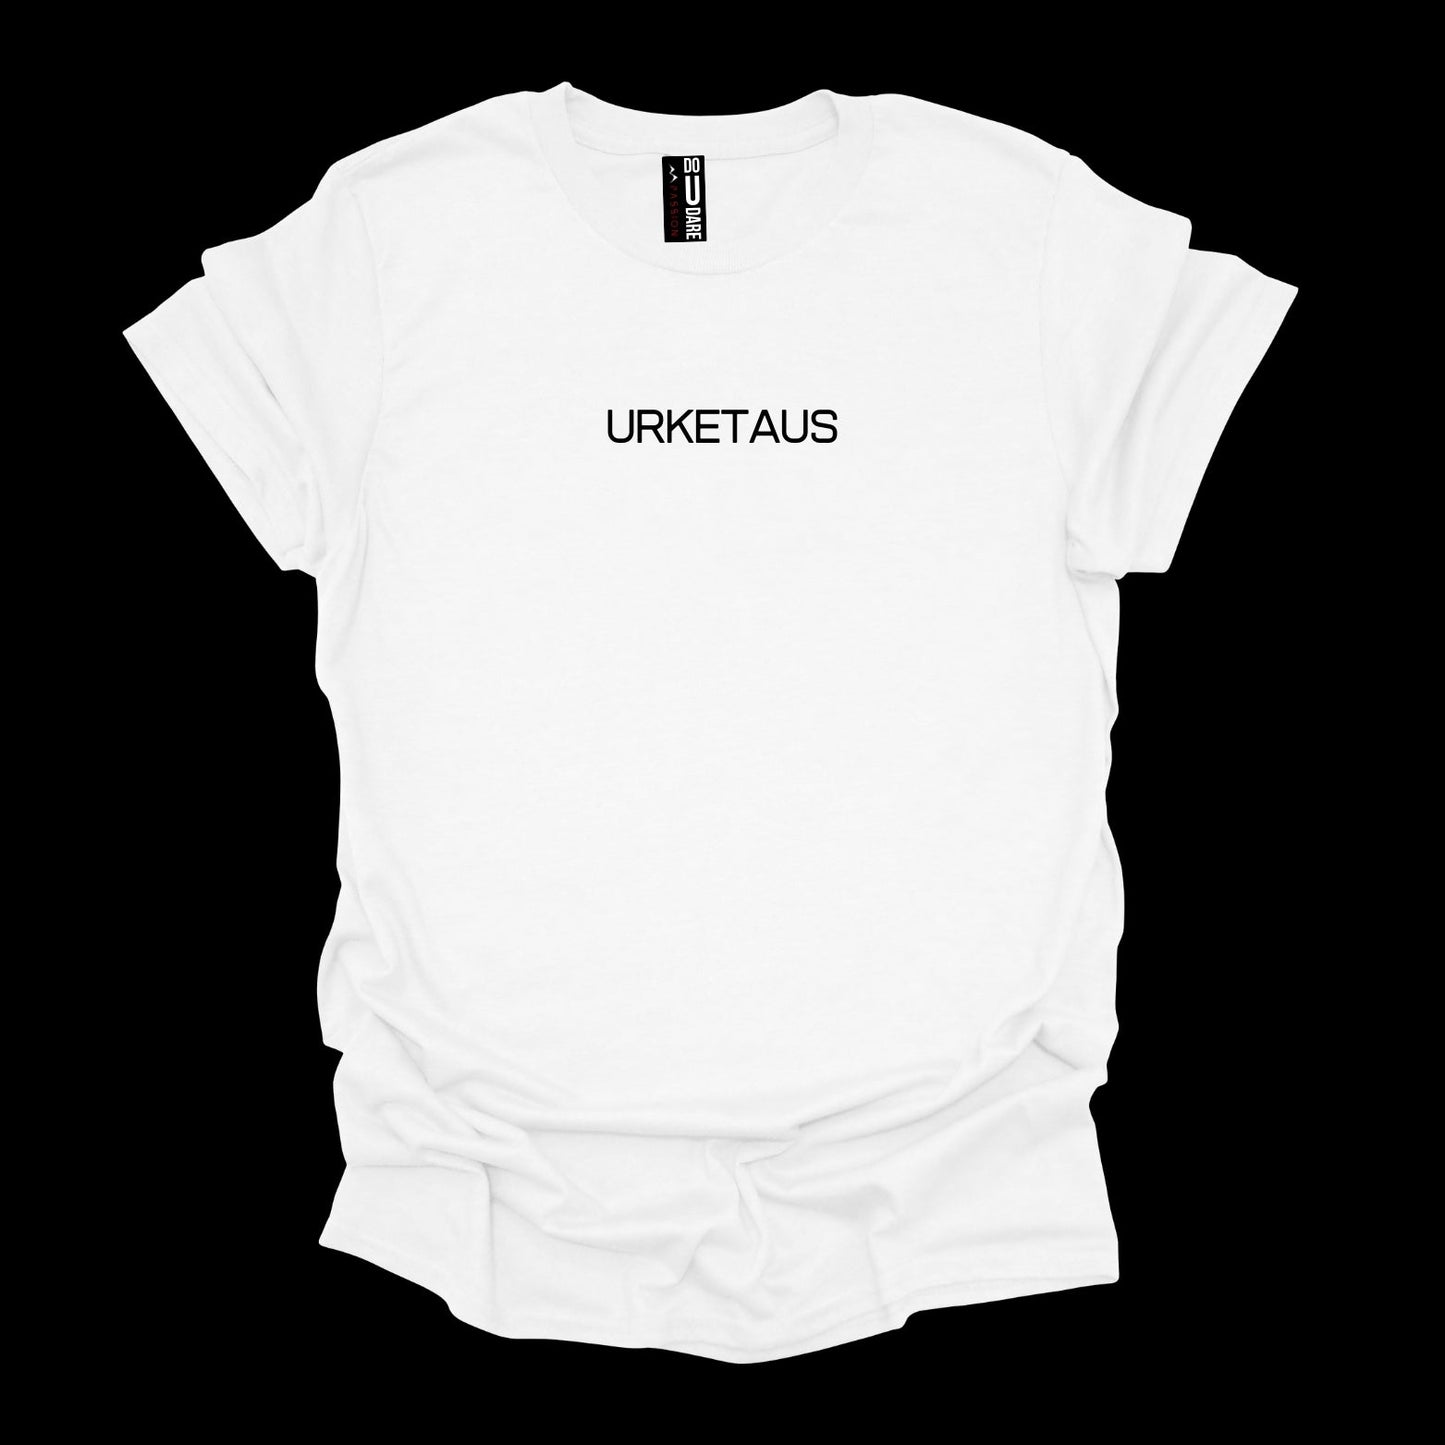 URKETAUS UNISEX Sunnmørs TEE t-skjorte med Sunnmørs-sitat og uttrykk - DoUdare